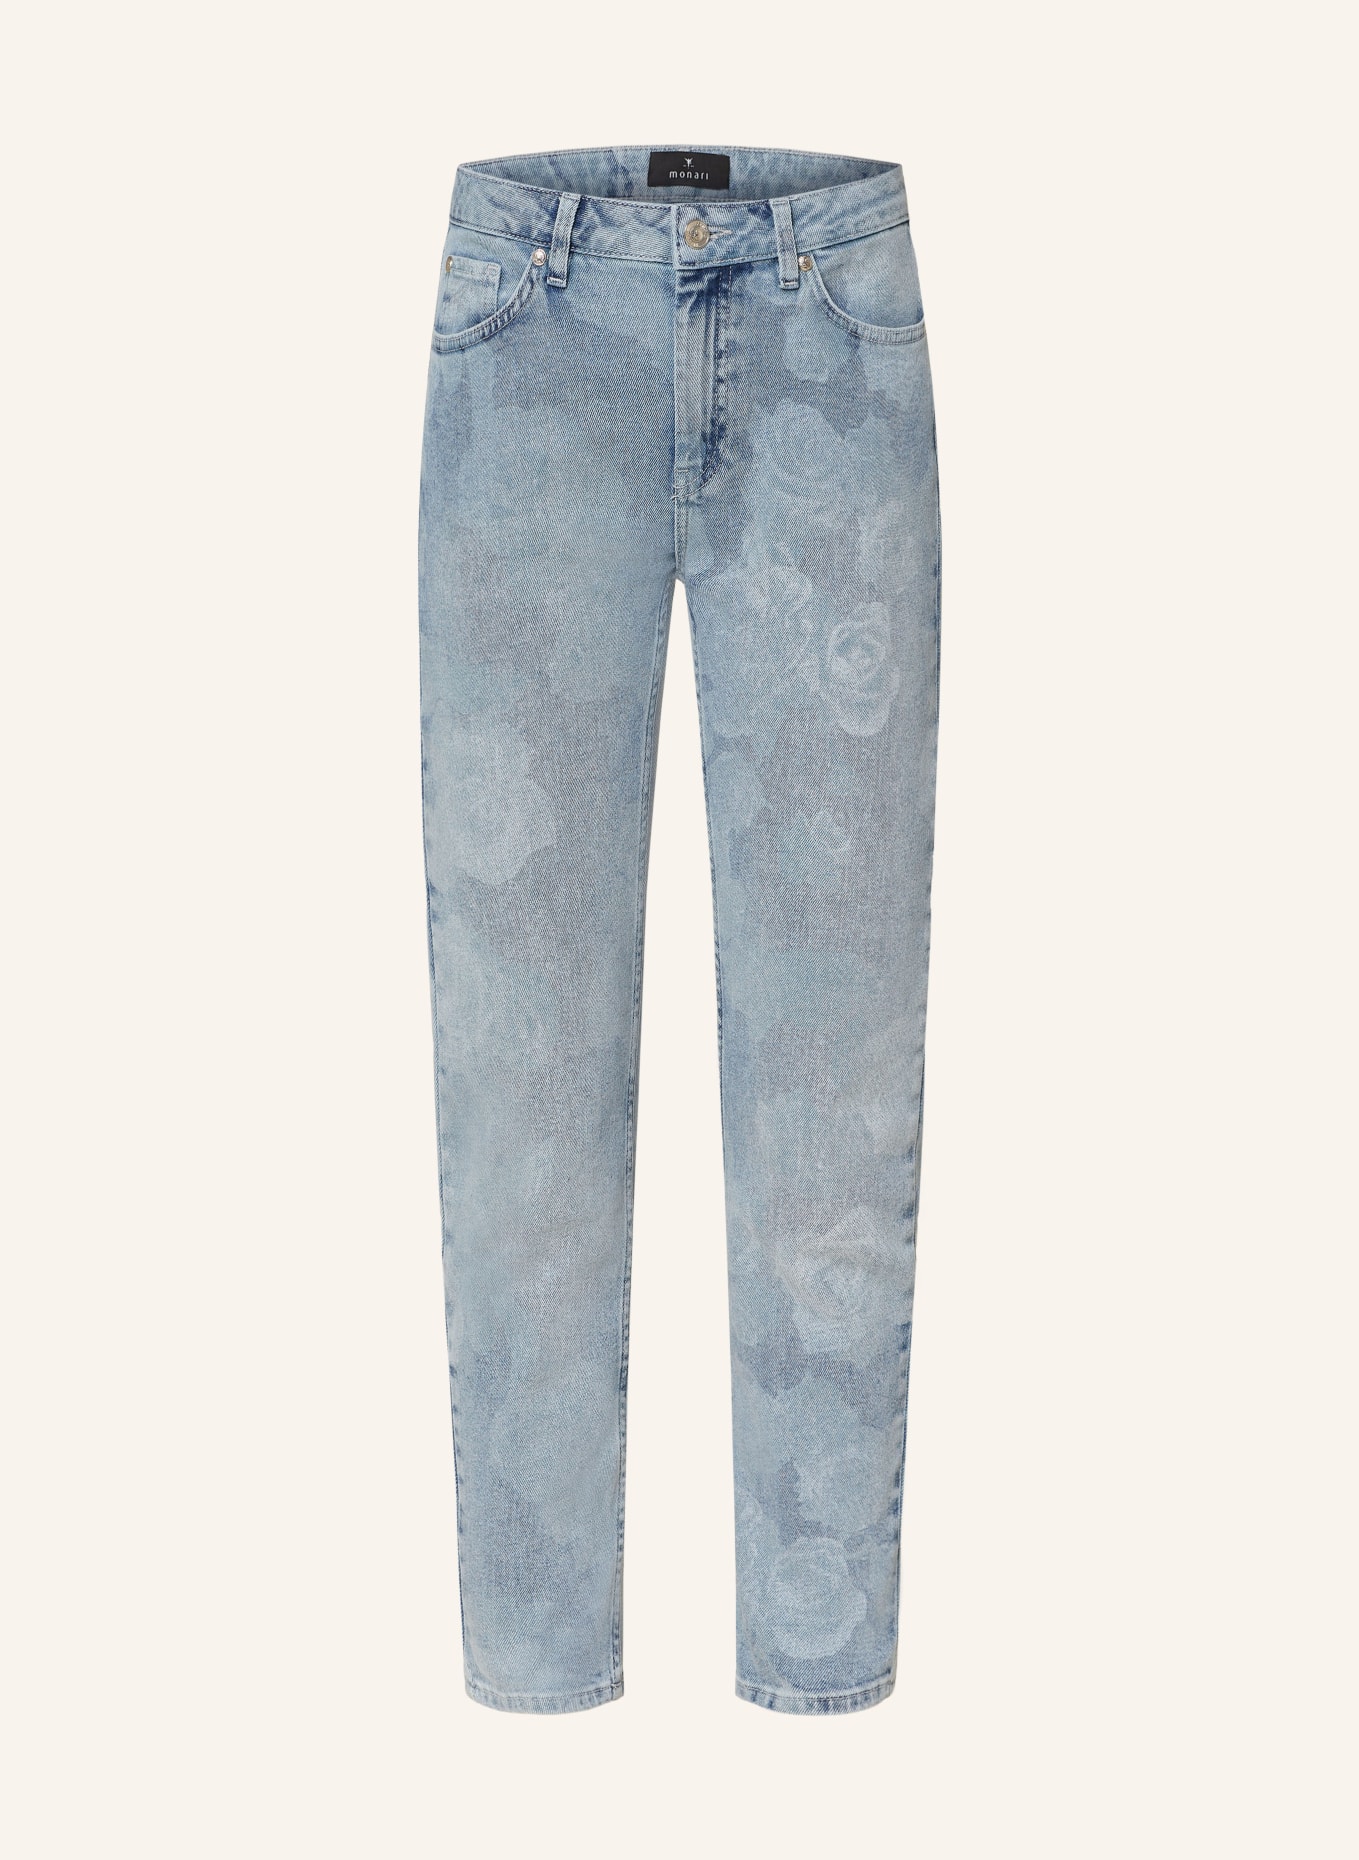 monari 7/8-Jeans, Farbe: 750 jeans (Bild 1)